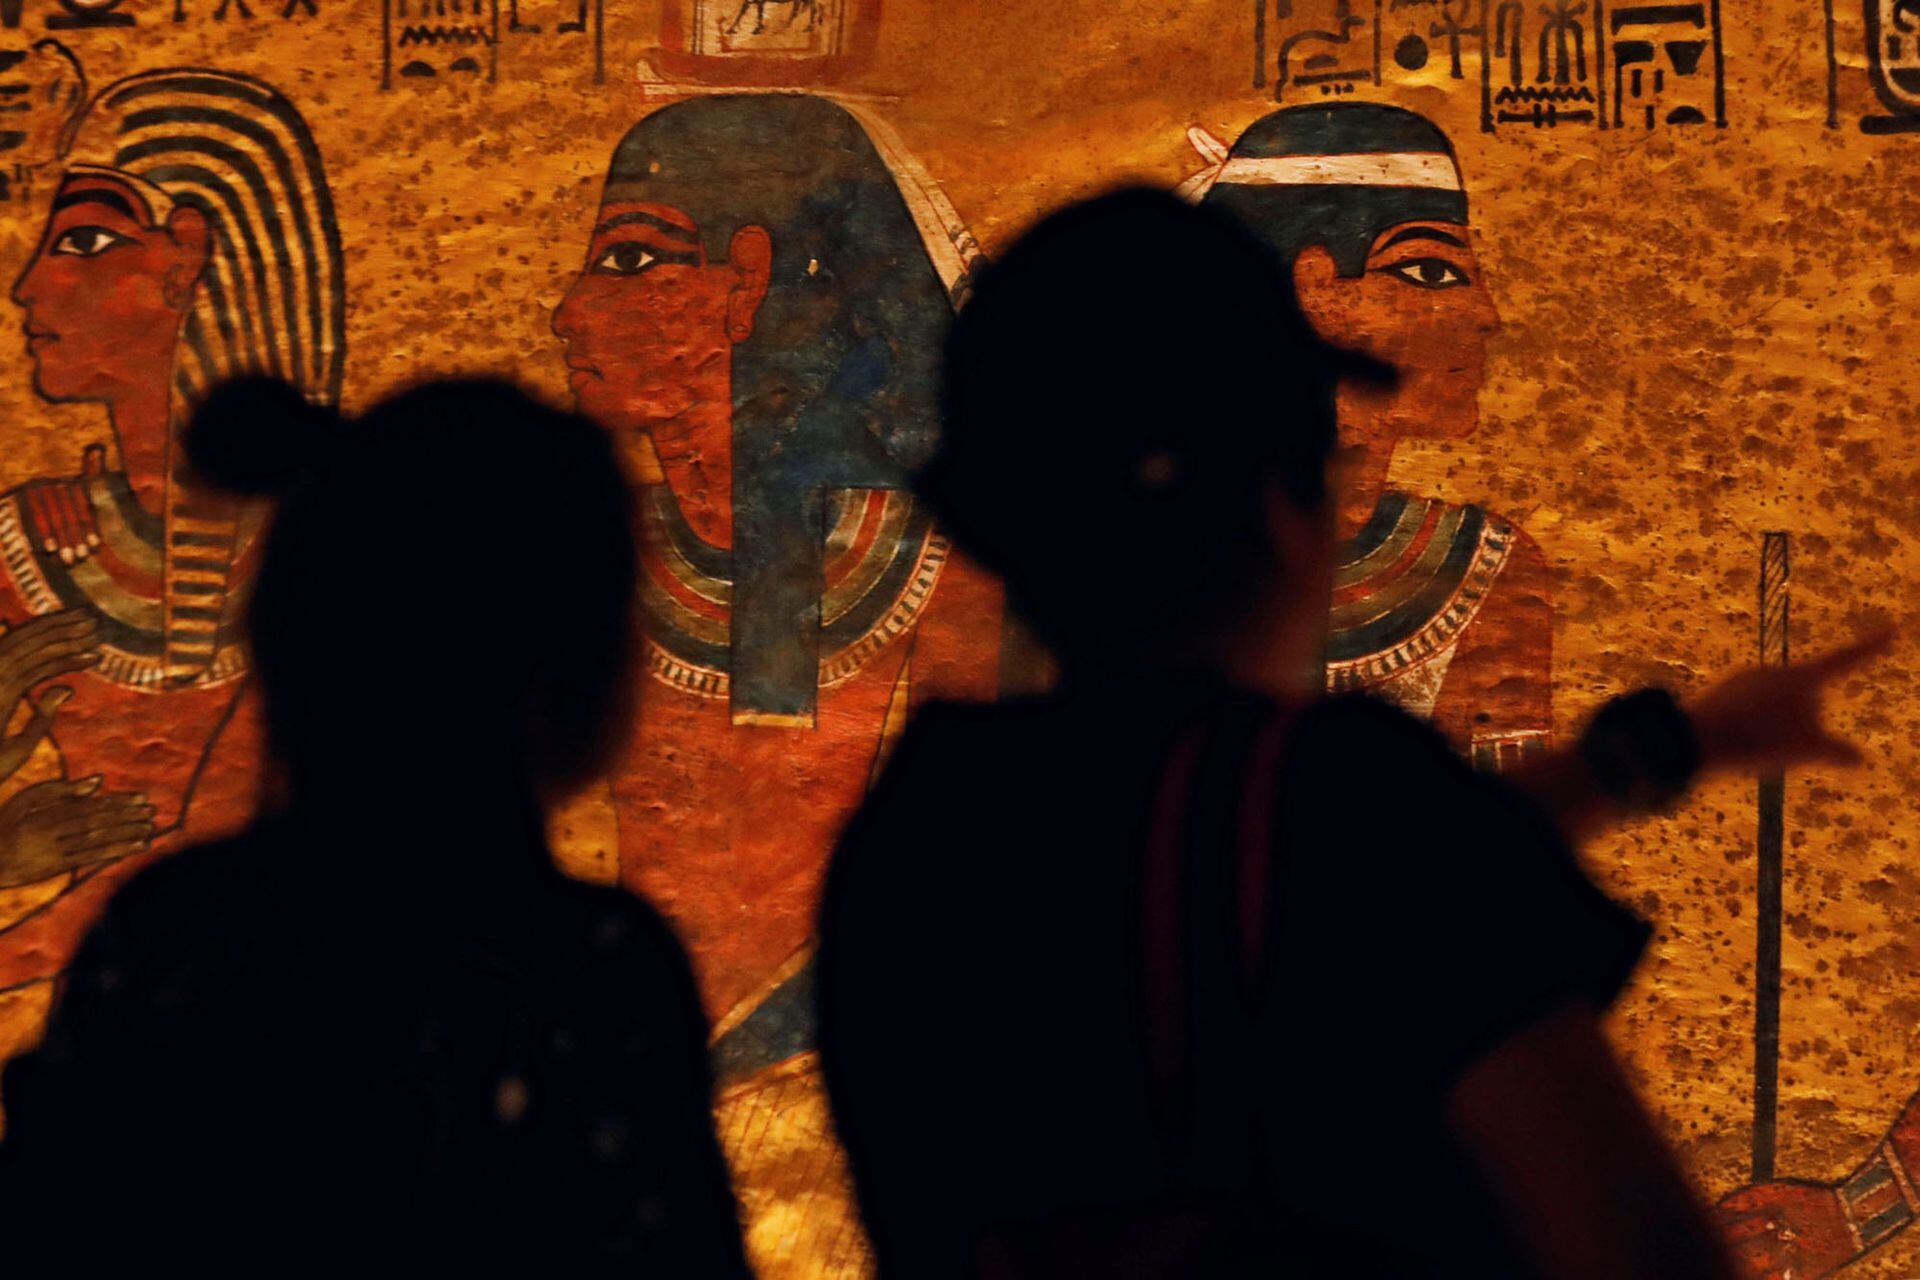 La tumba del rey Tutankamon en Egipto